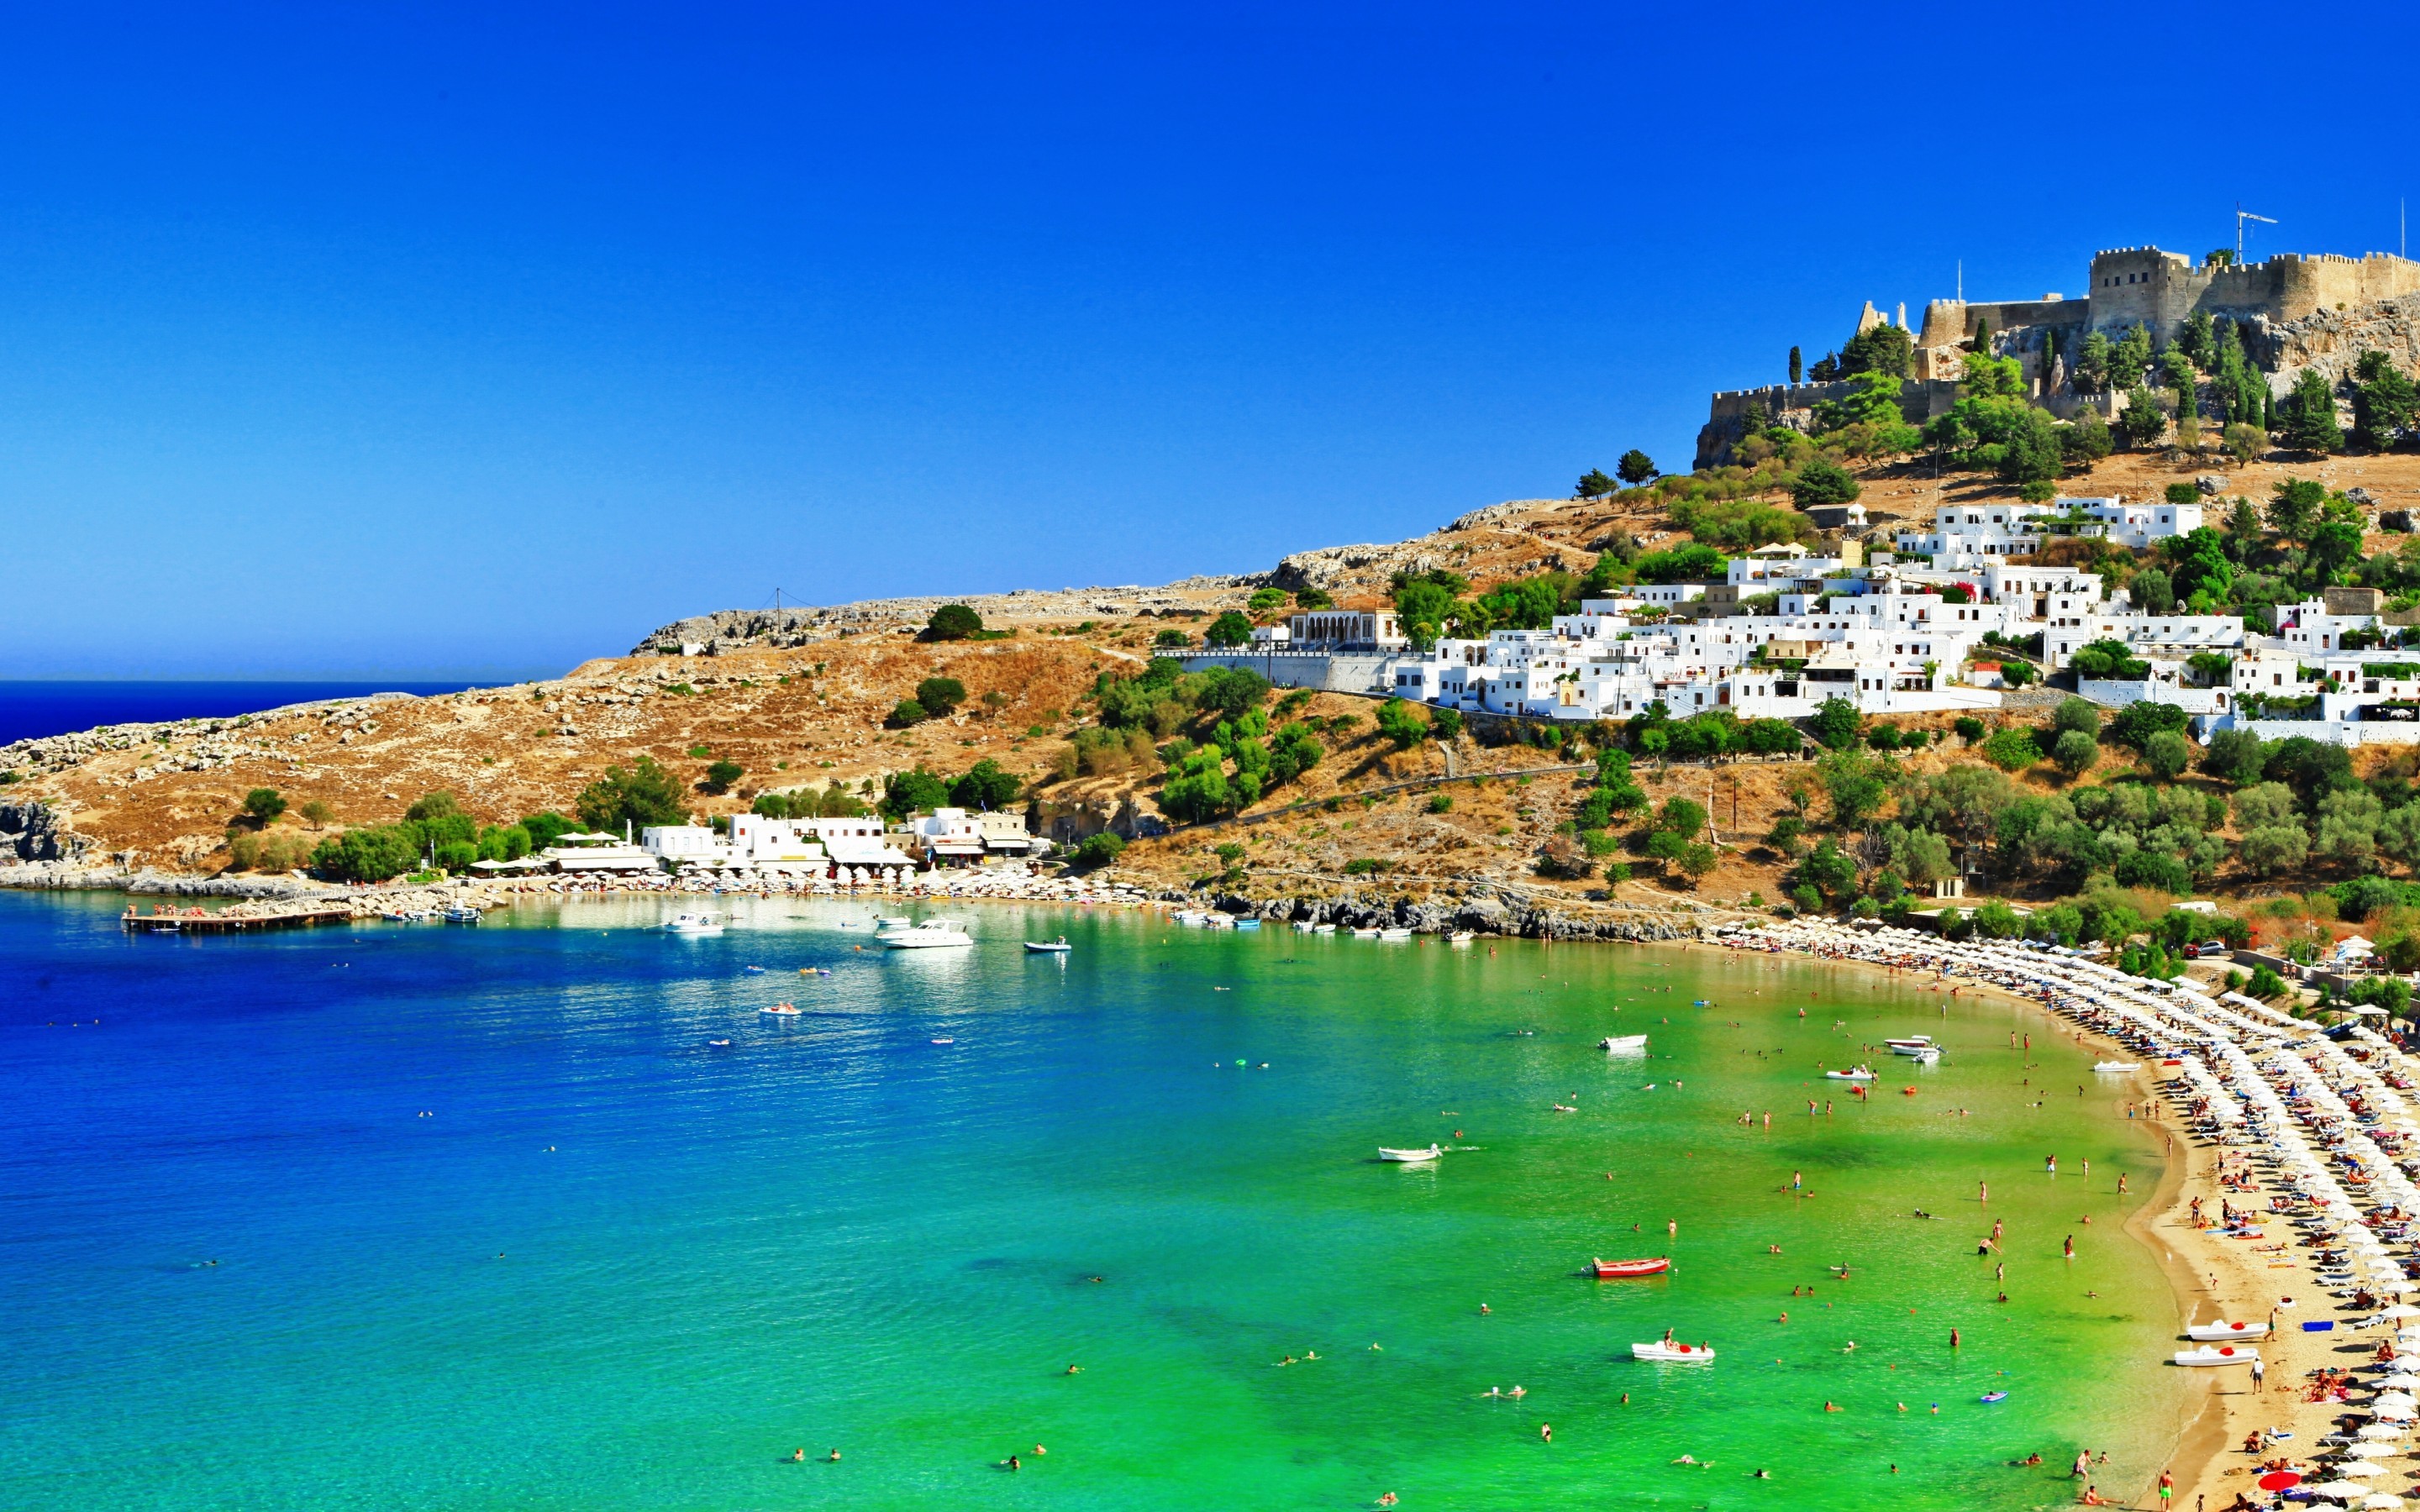 Rhodes Greece , HD Wallpaper & Backgrounds